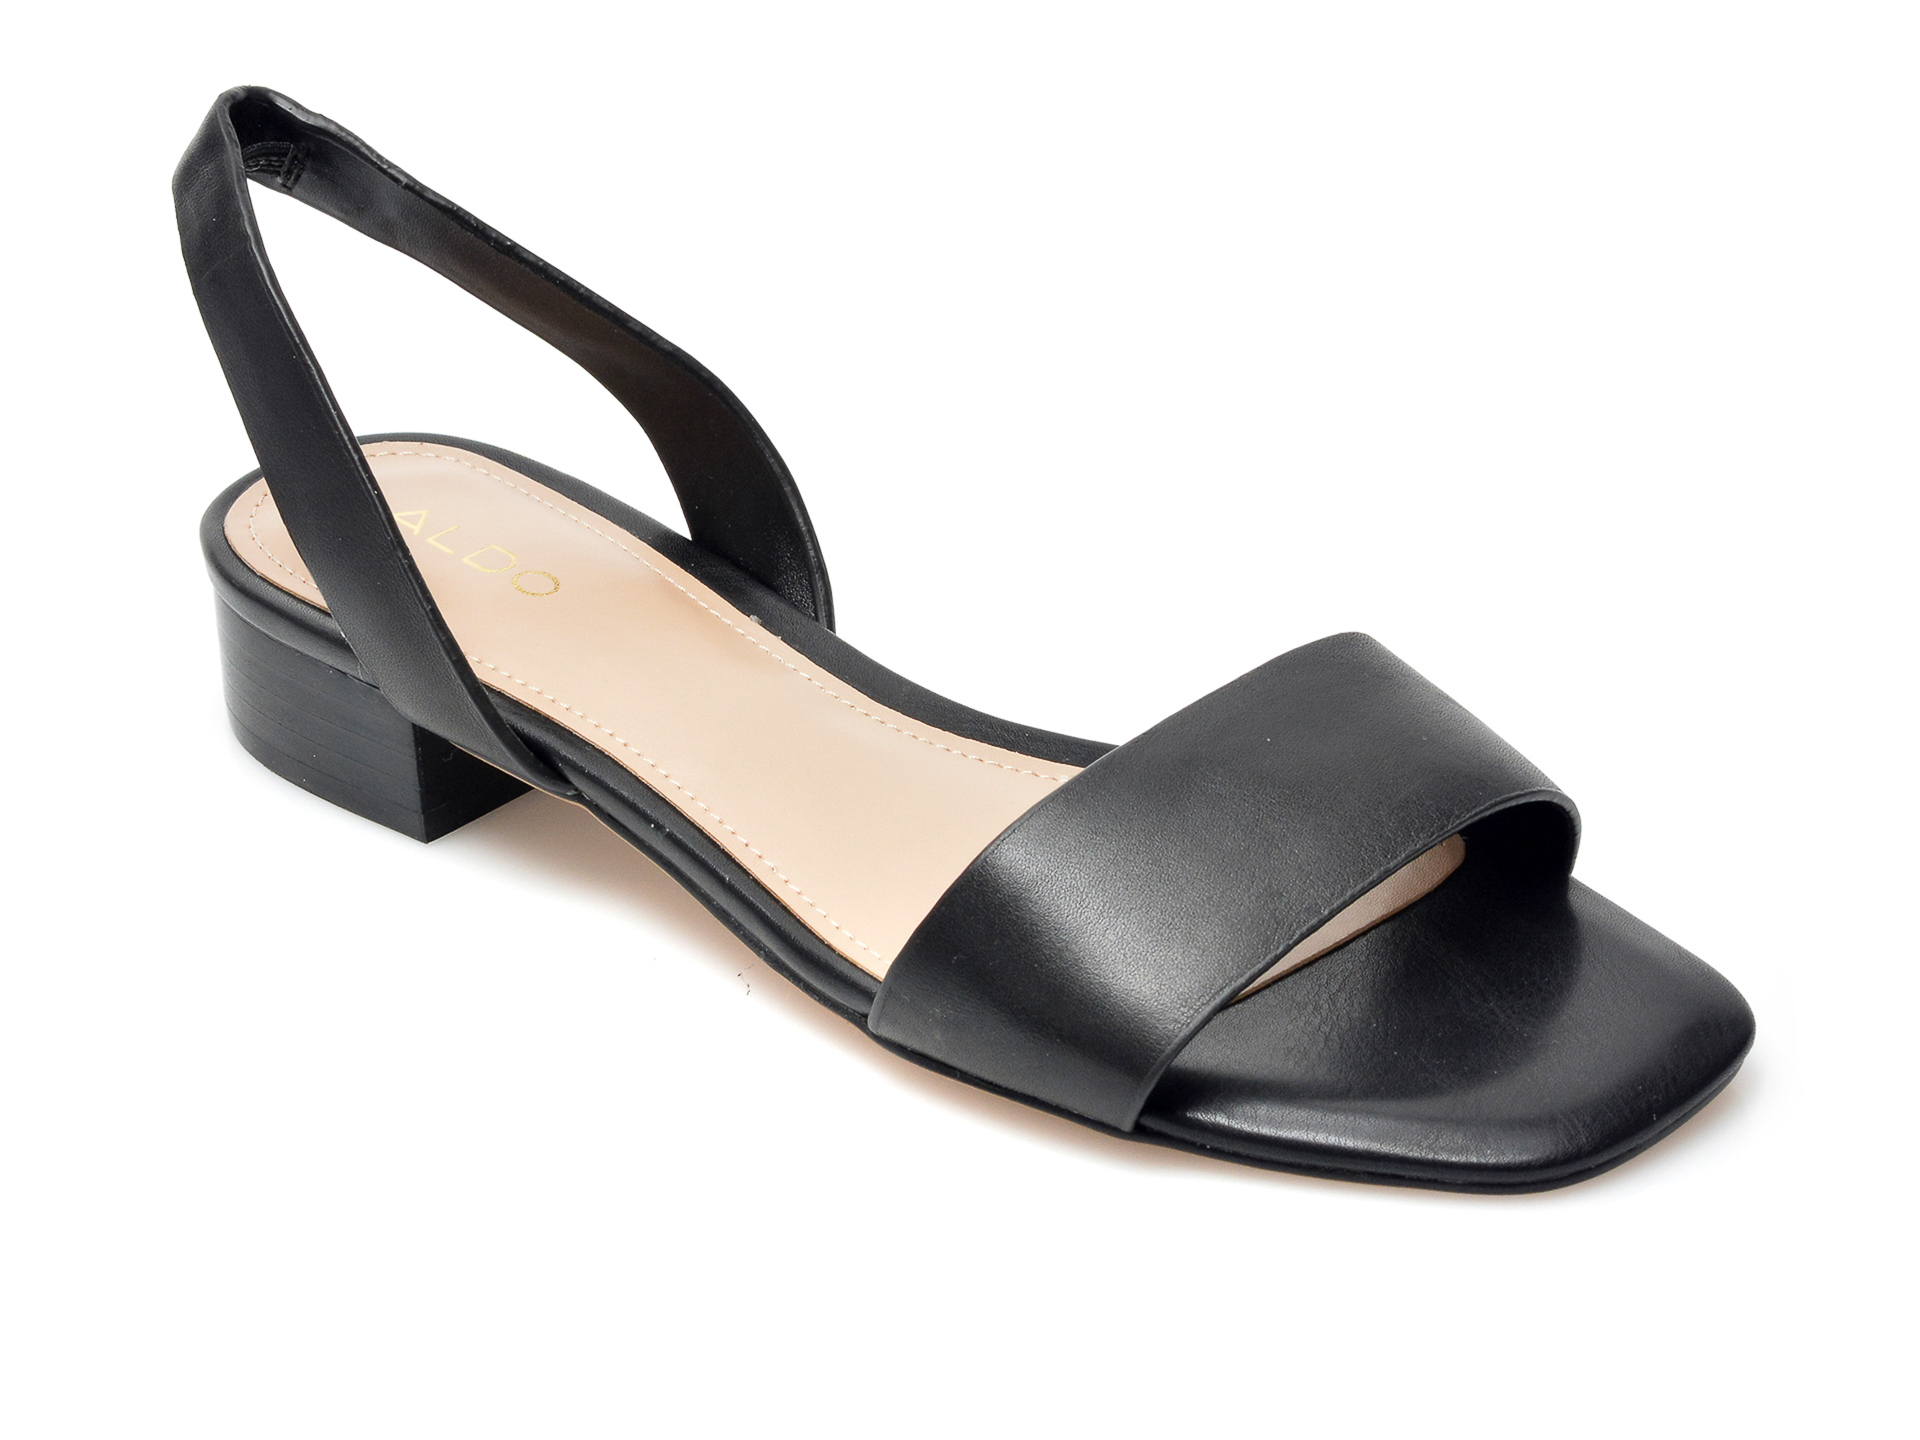 Sandale ALDO negre, Doredda001, din piele naturala Aldo